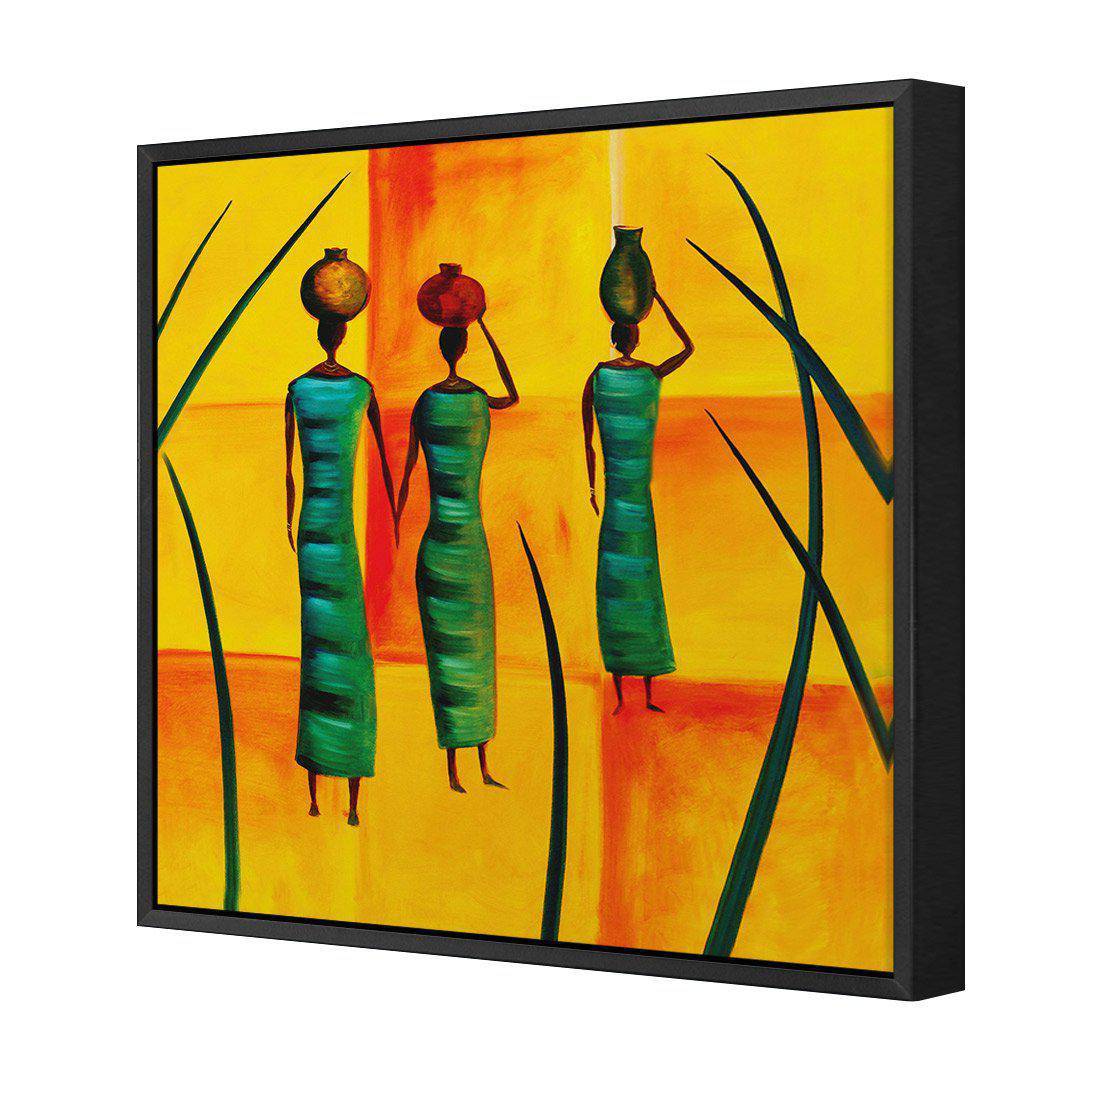 Three African Women Canvas Art-Canvas-Wall Art Designs-30x30cm-Canvas - Black Frame-Wall Art Designs